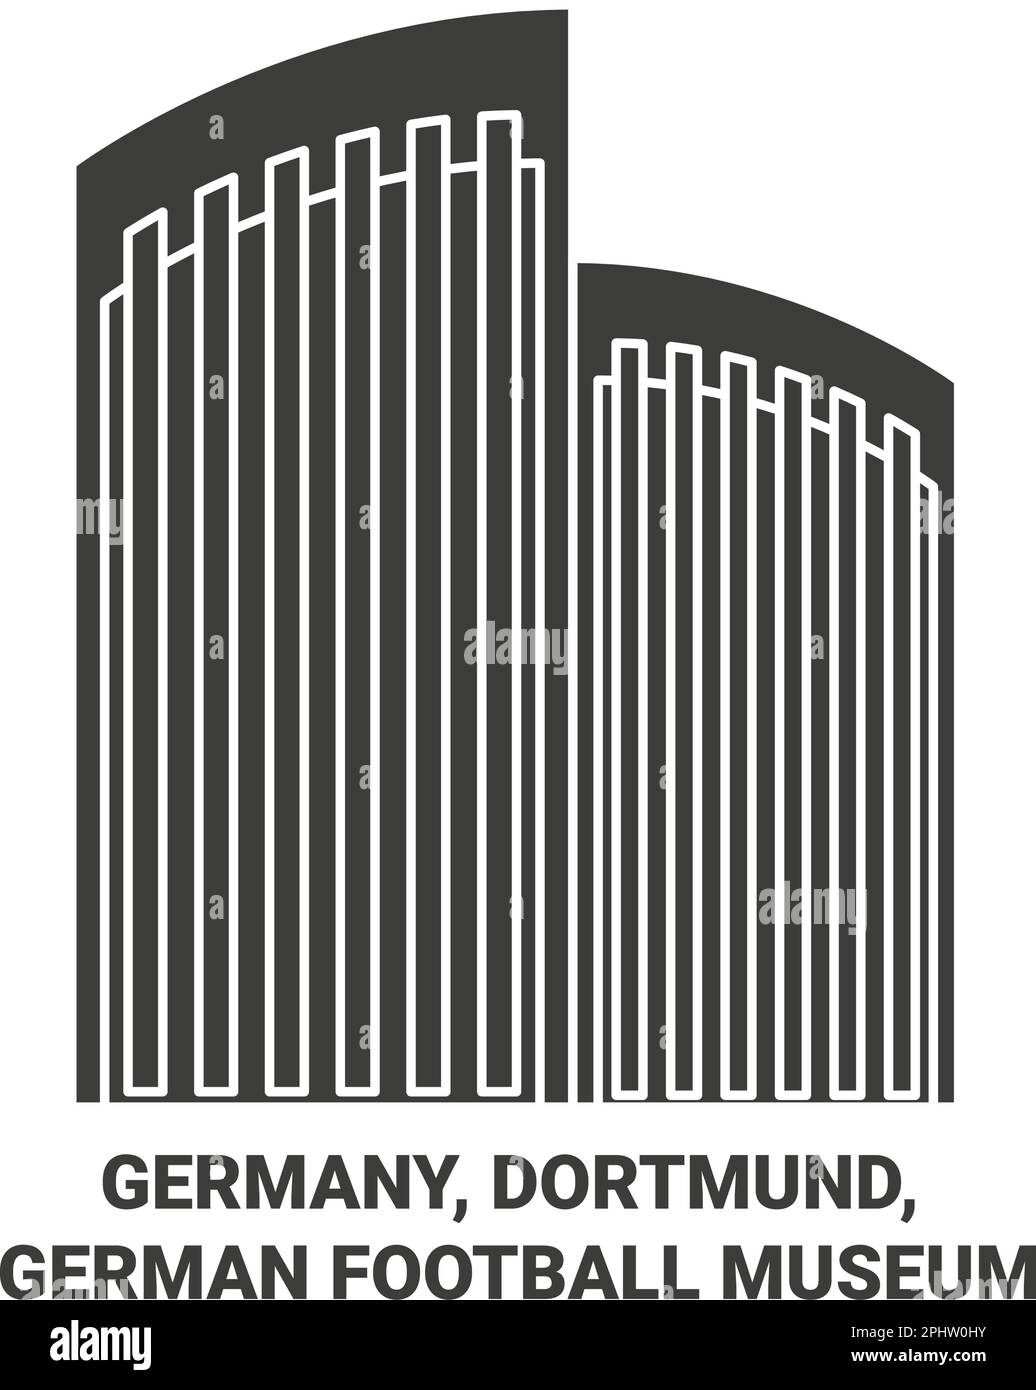 Germany, Dortmund, German Football Museum travel landmark vector illustration Stock Vector